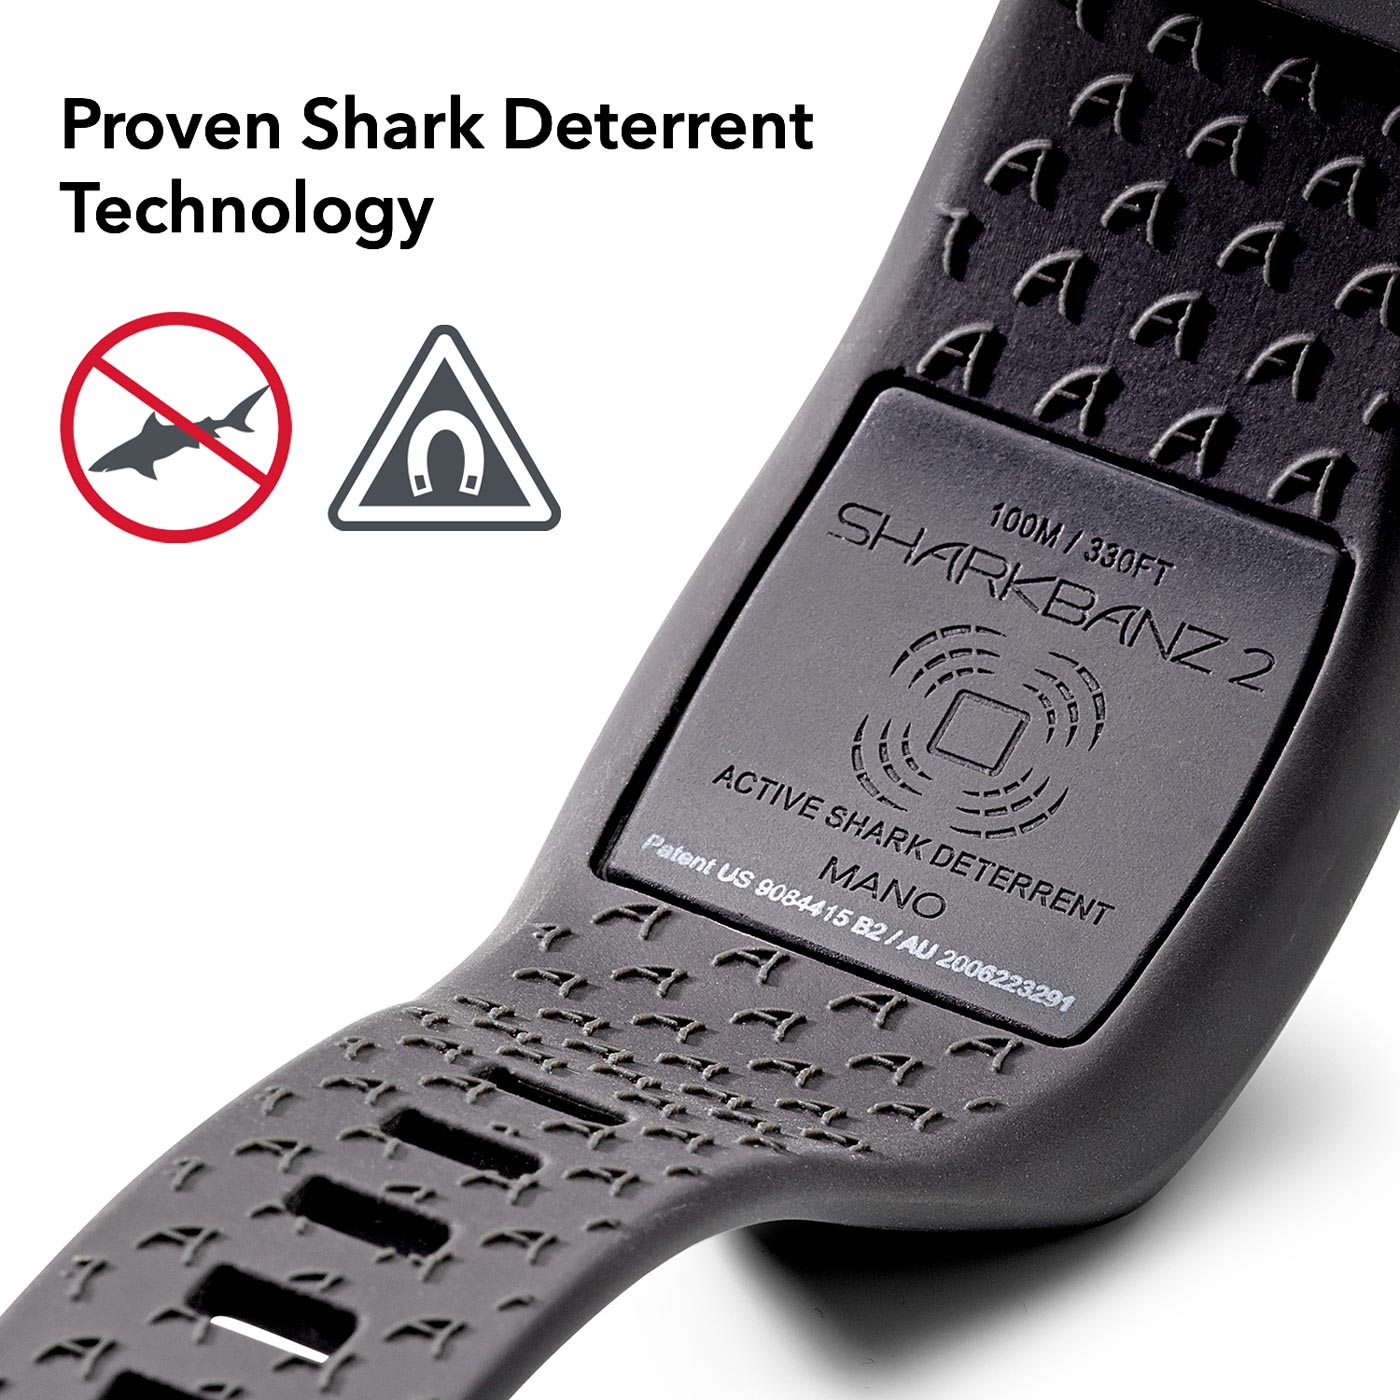 Sharkbanz 2 – Wearable Shark Deterrent